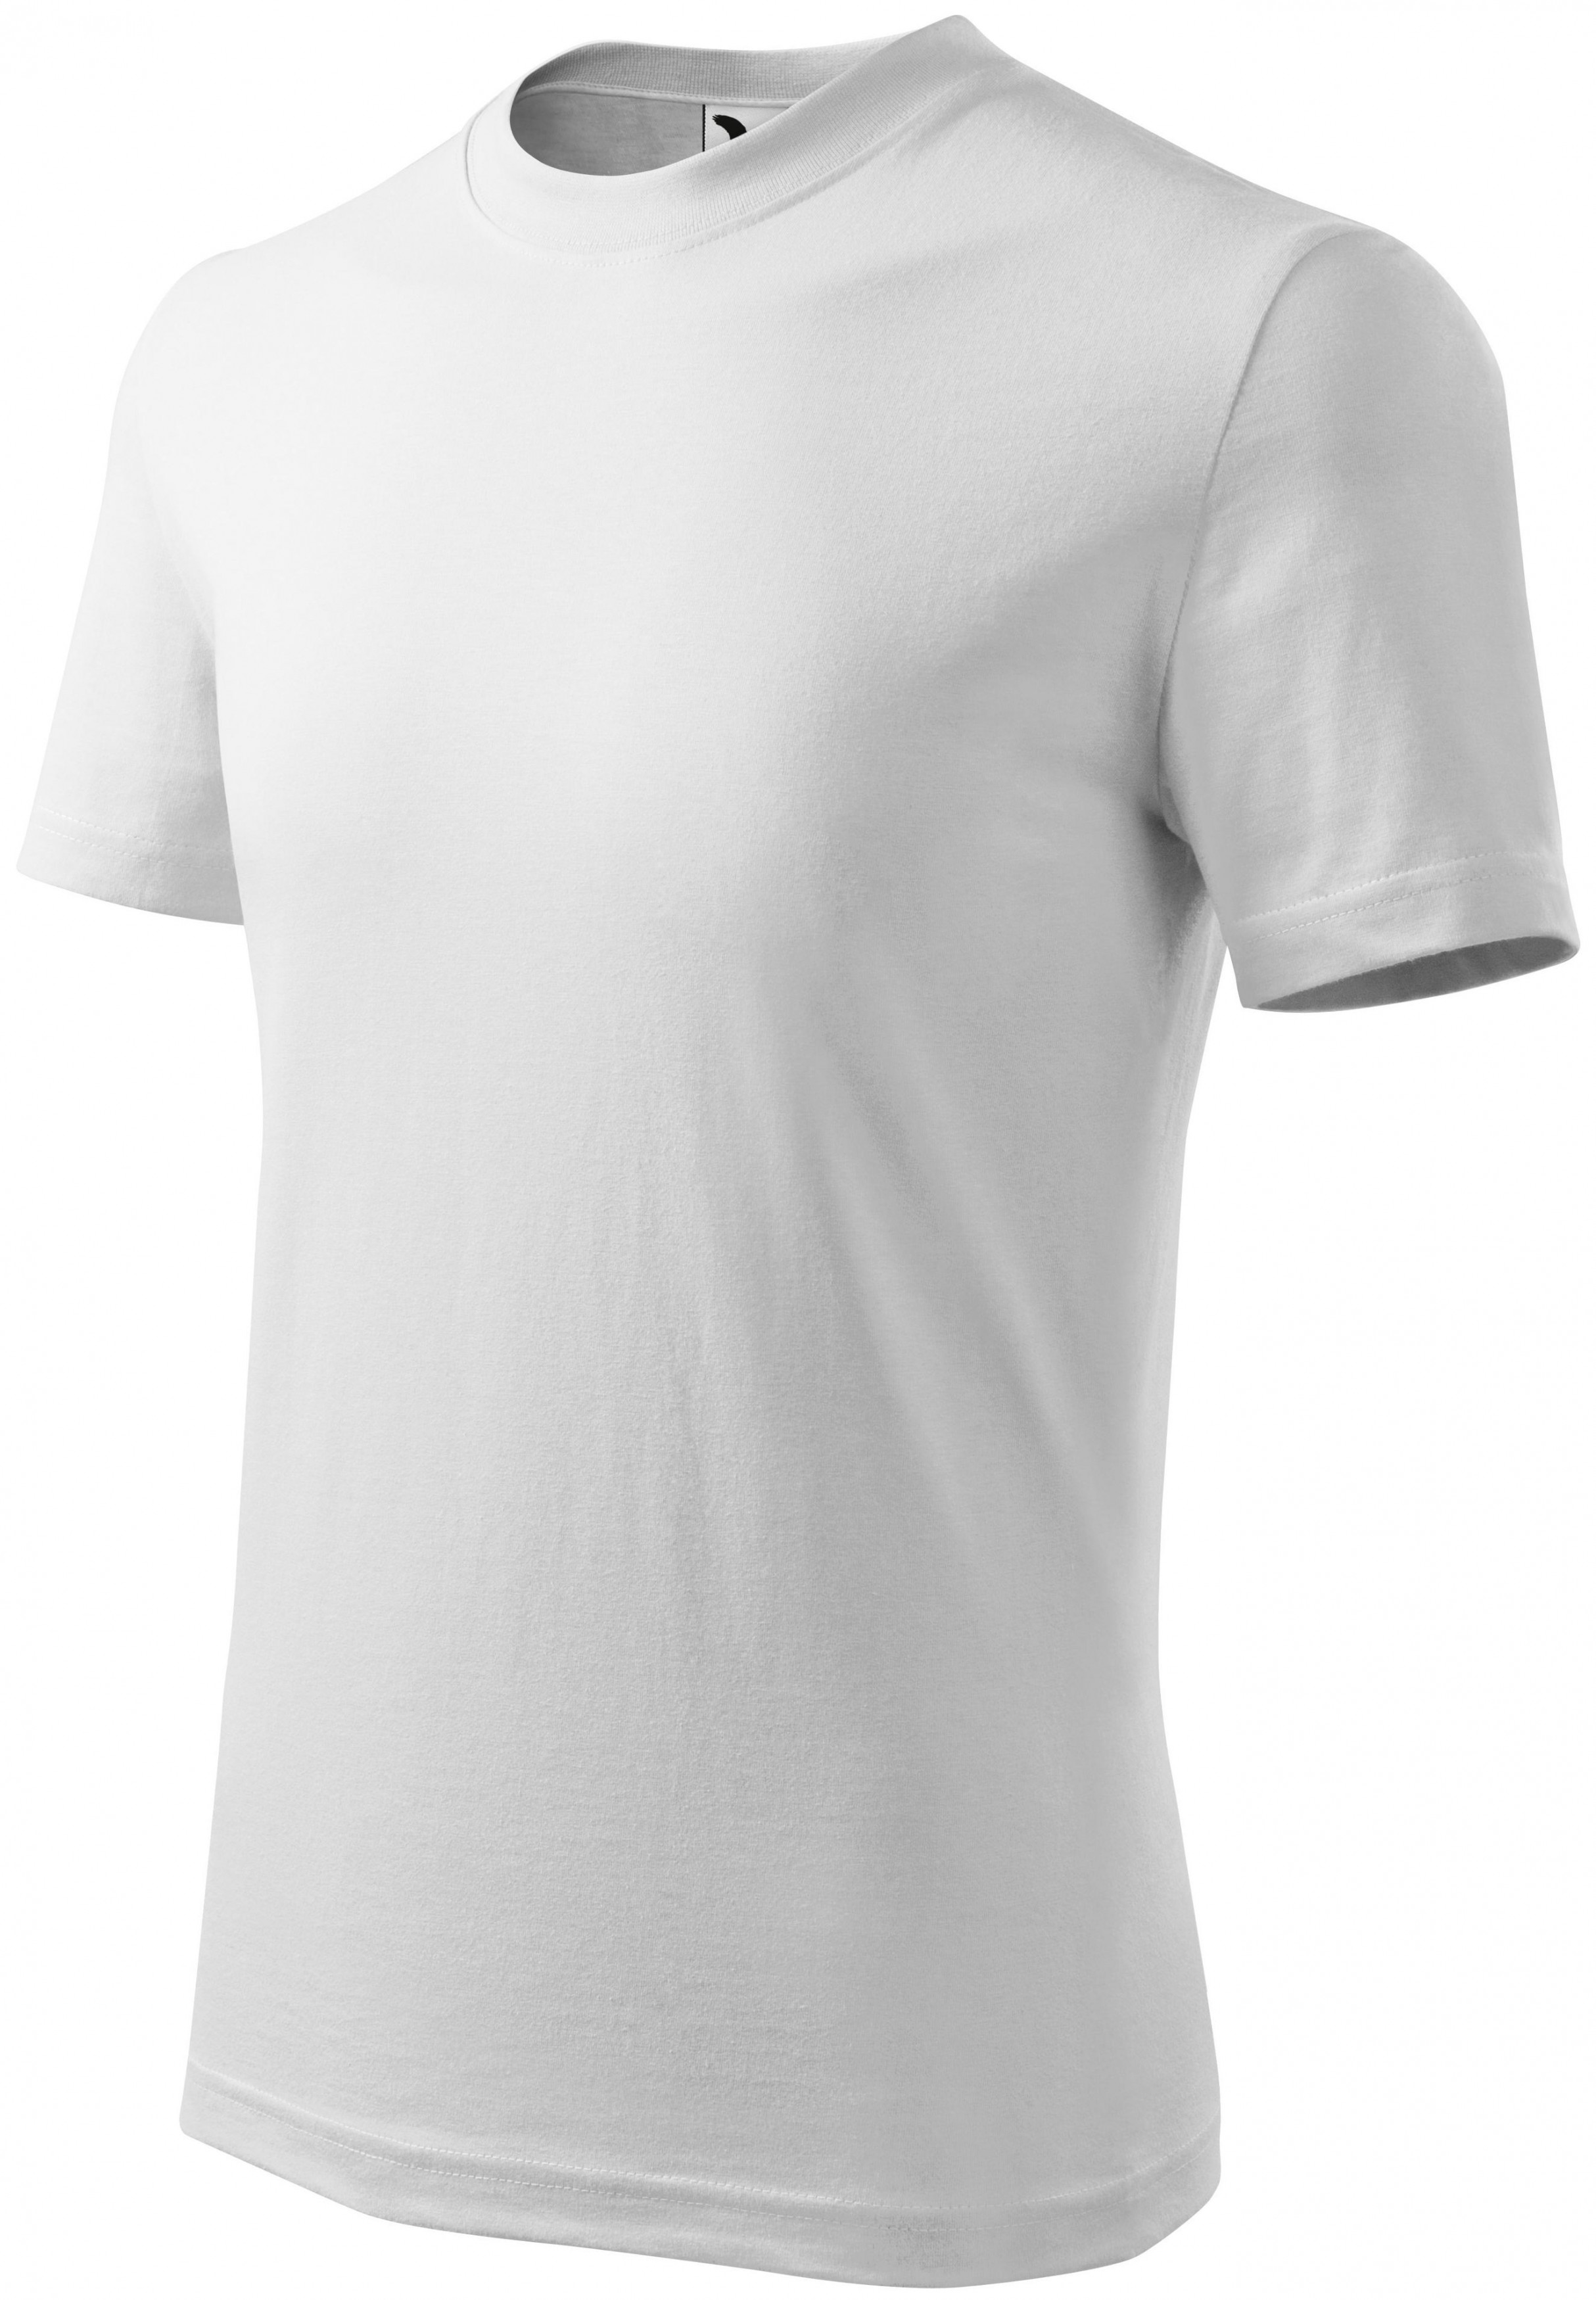 Detské tričko klasické, biela, 122cm / 6rokov